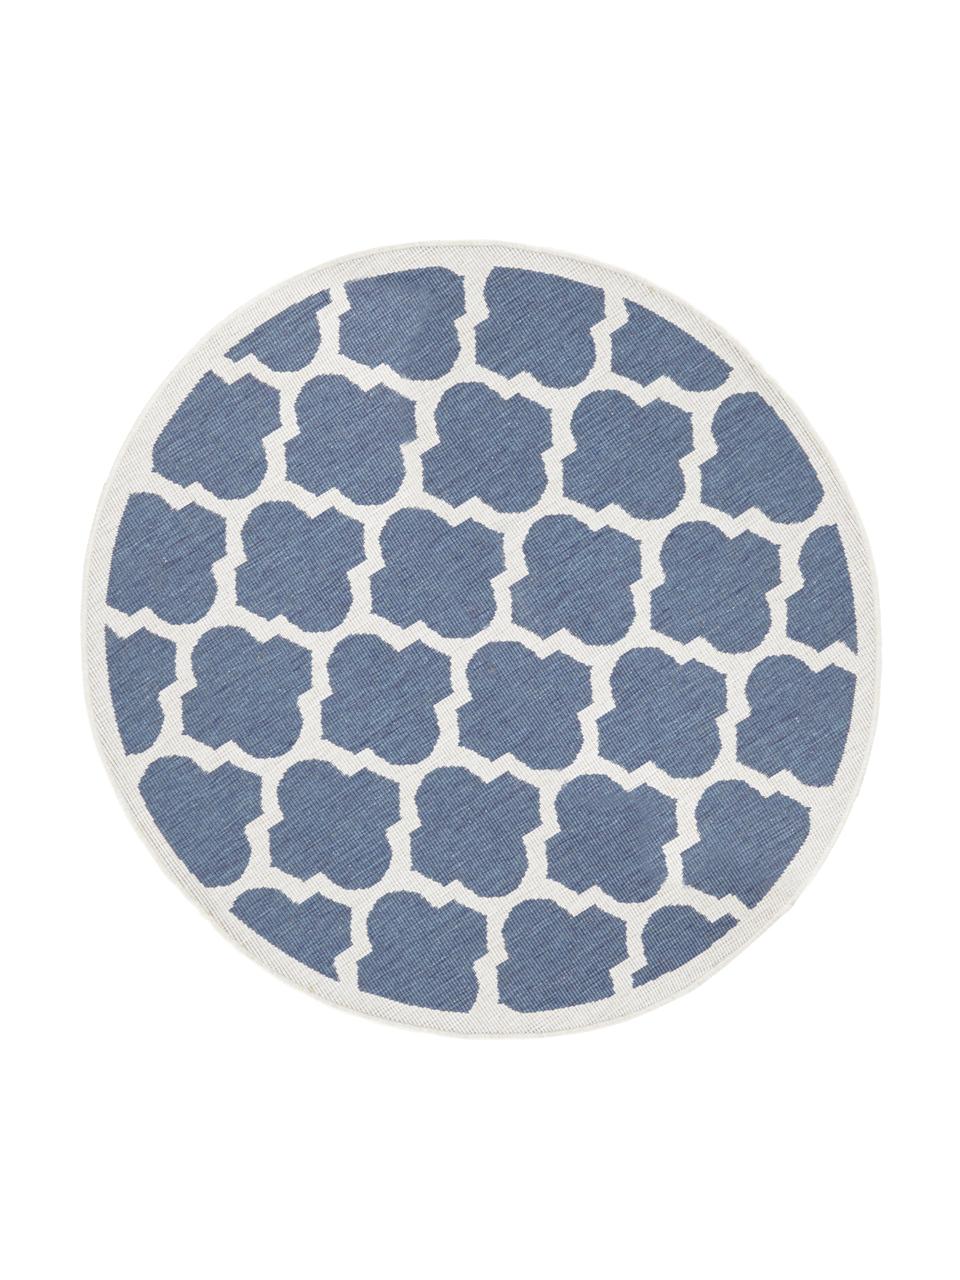 Okrągły dwustronny dywan wewnętrzny/zewnętrzny Palermo, Niebieski, kremowy, Ø 140 cm (Rozmiar M)